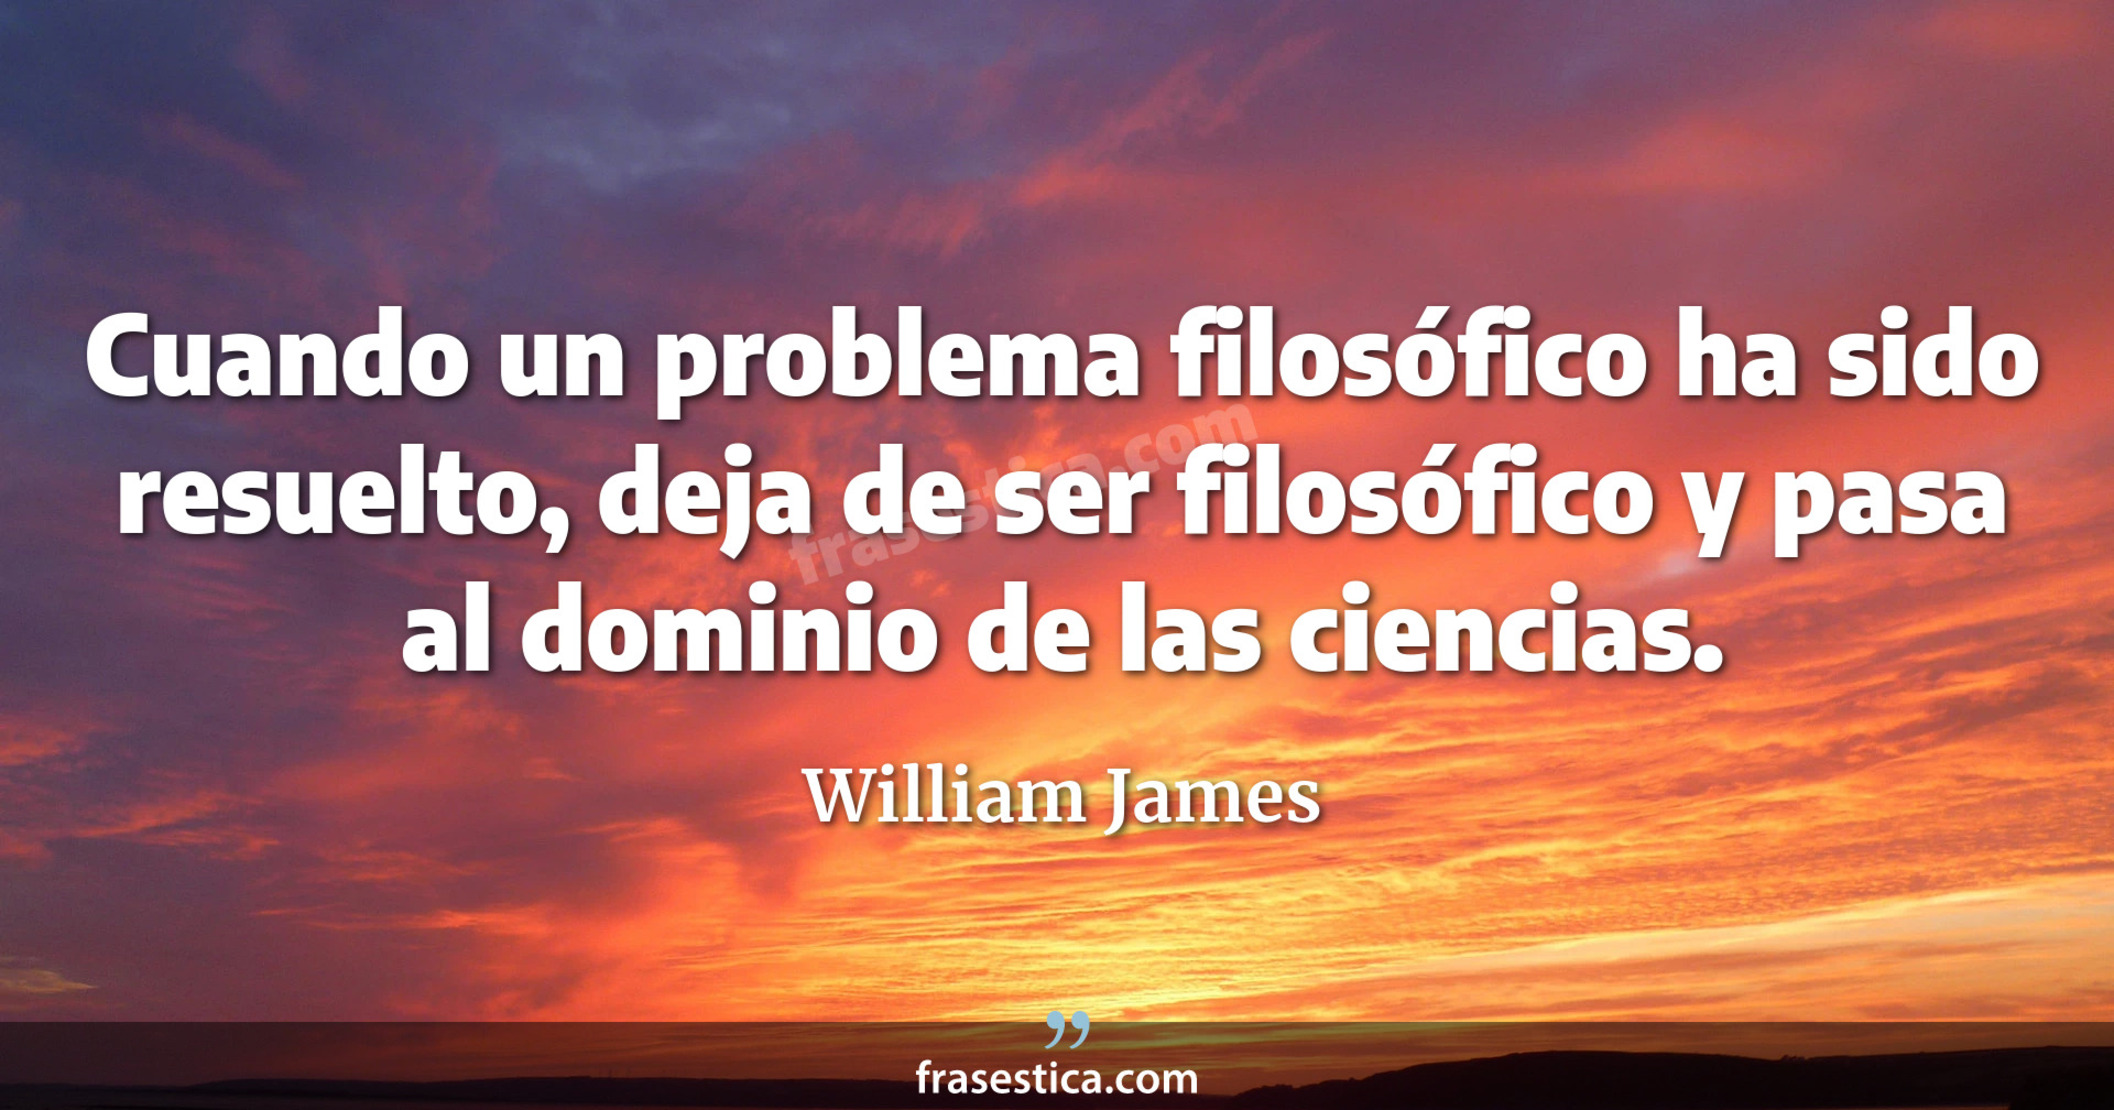 Cuando un problema filosófico ha sido resuelto, deja de ser filosófico y pasa al dominio de las ciencias. - William James